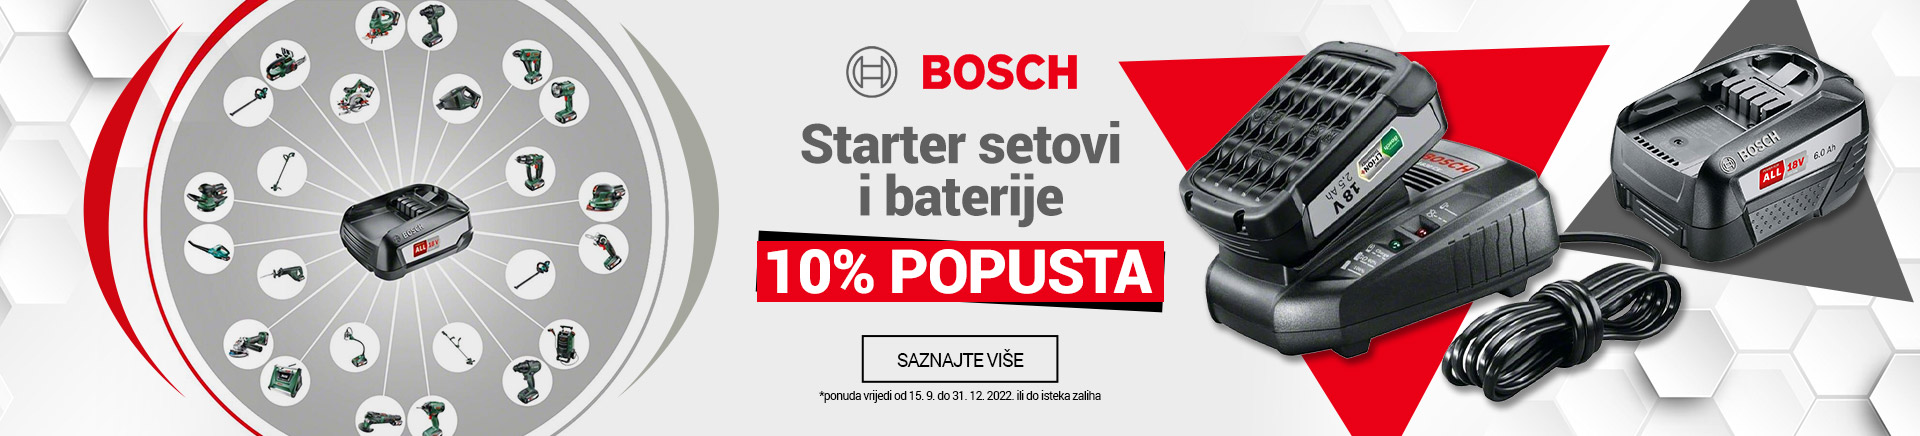 Bosch starter setovi i baterije do 10% popusta